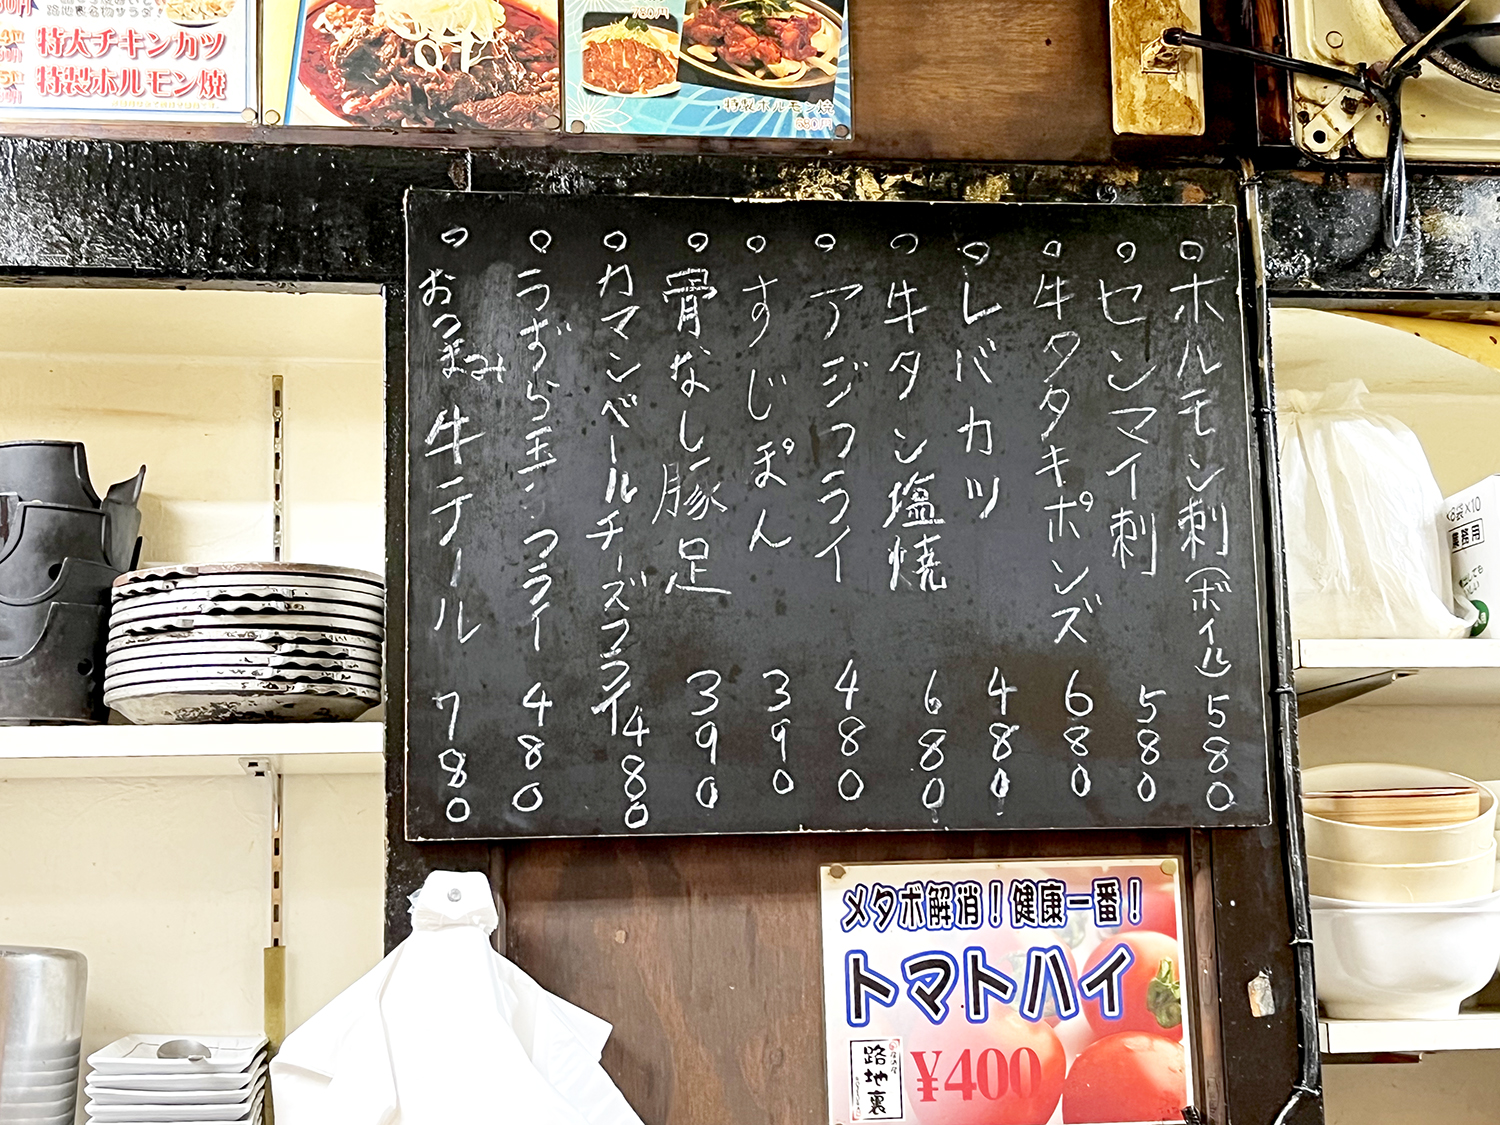 日替わりは黒板に表示。新鮮なホルモンを使った料理は食肉市場が近い品川ならでは。